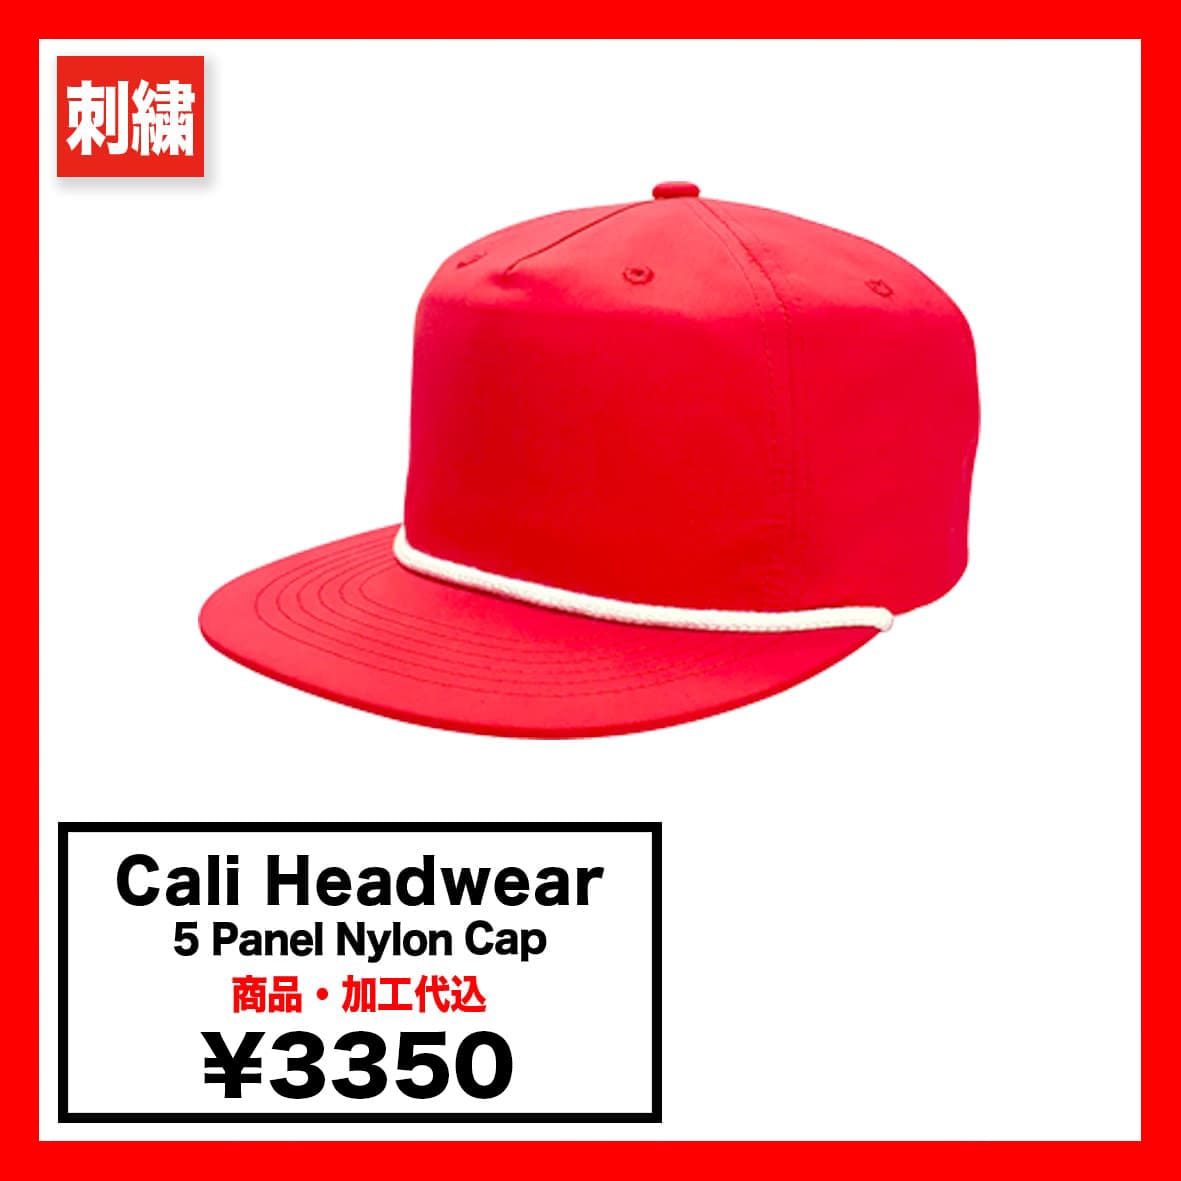 Cali Headwear カリヘッドウェア 5 Panel Nylon Cap (品番NY92_NY02)